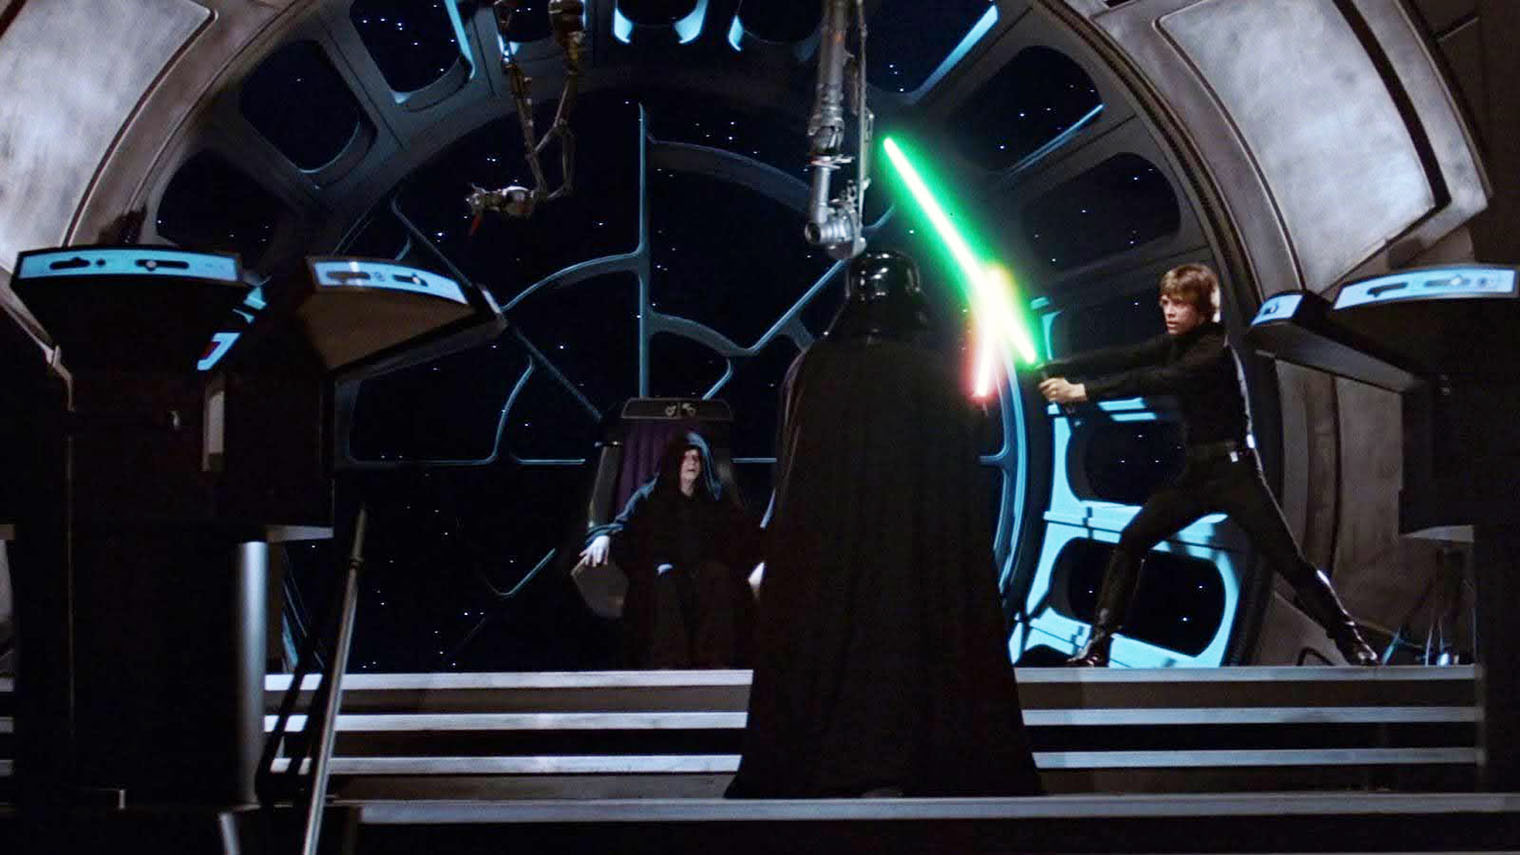 Лучшая сцена фильма — дуэль между Люком Скайуокером и Дартом Вейдером в тронном зале Императора Кадр: Lucasfilm Ltd.